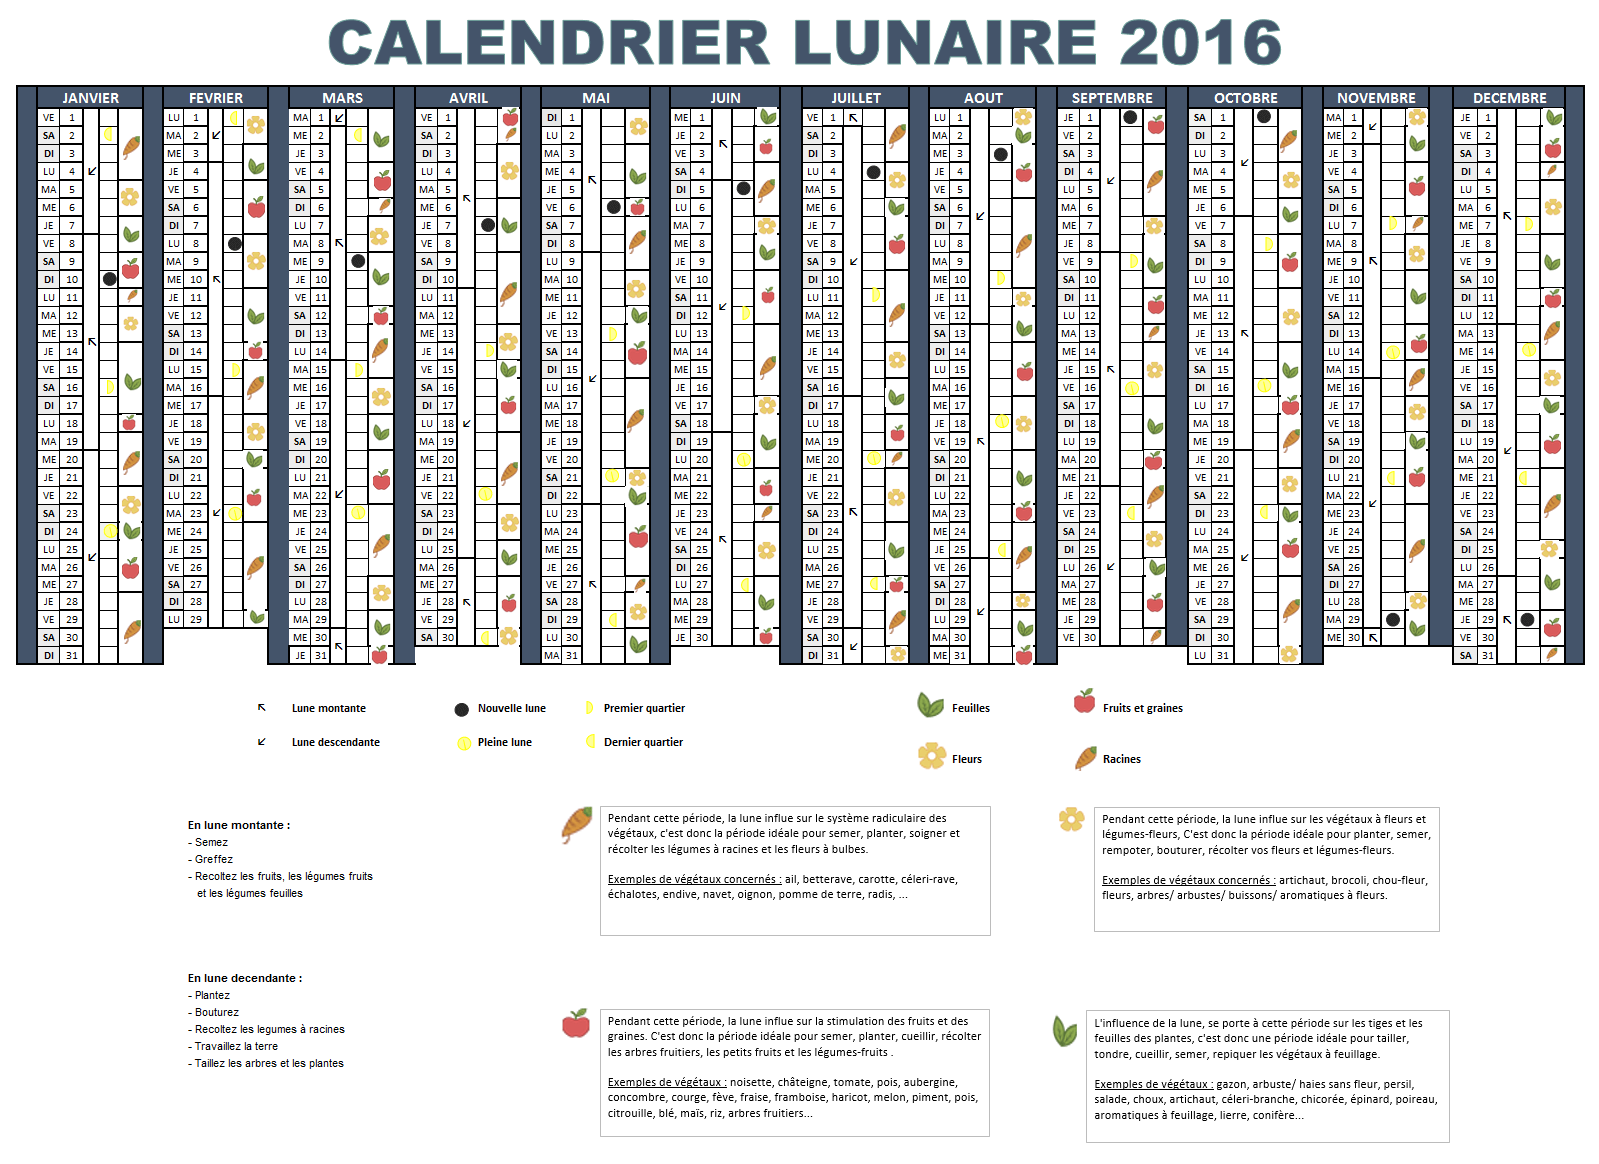 Calendrier lunaire 2016